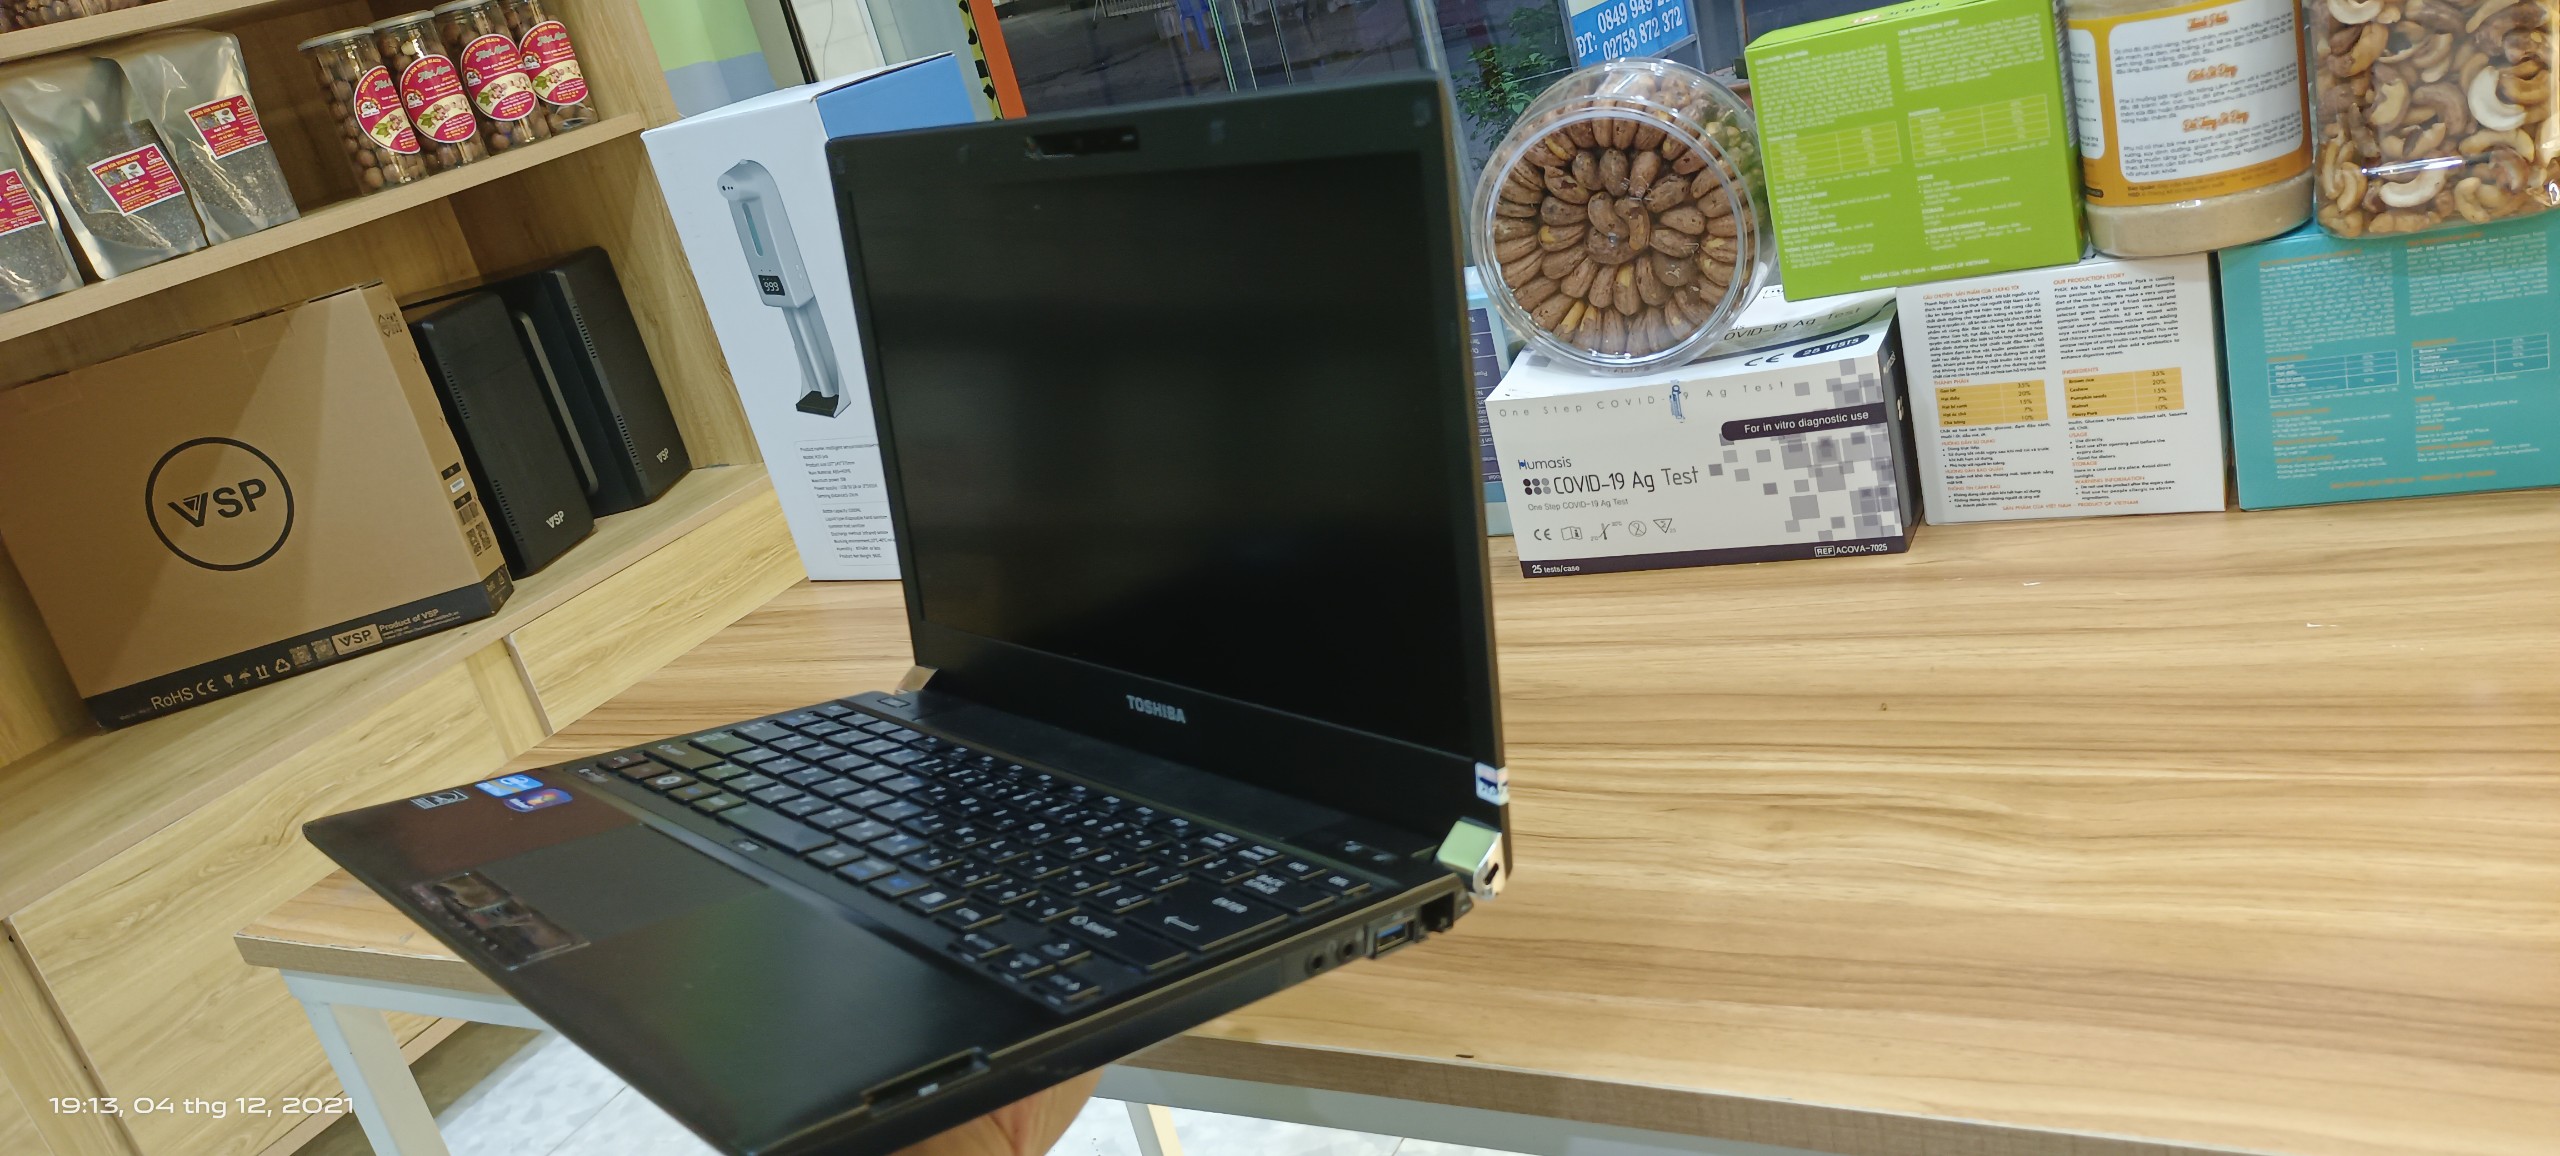 Laptop cũ Toshiba Dynabook R731 Core i7, 8gb Ram, 128gb SSD, 13.3inch HD, vỏ nhôm